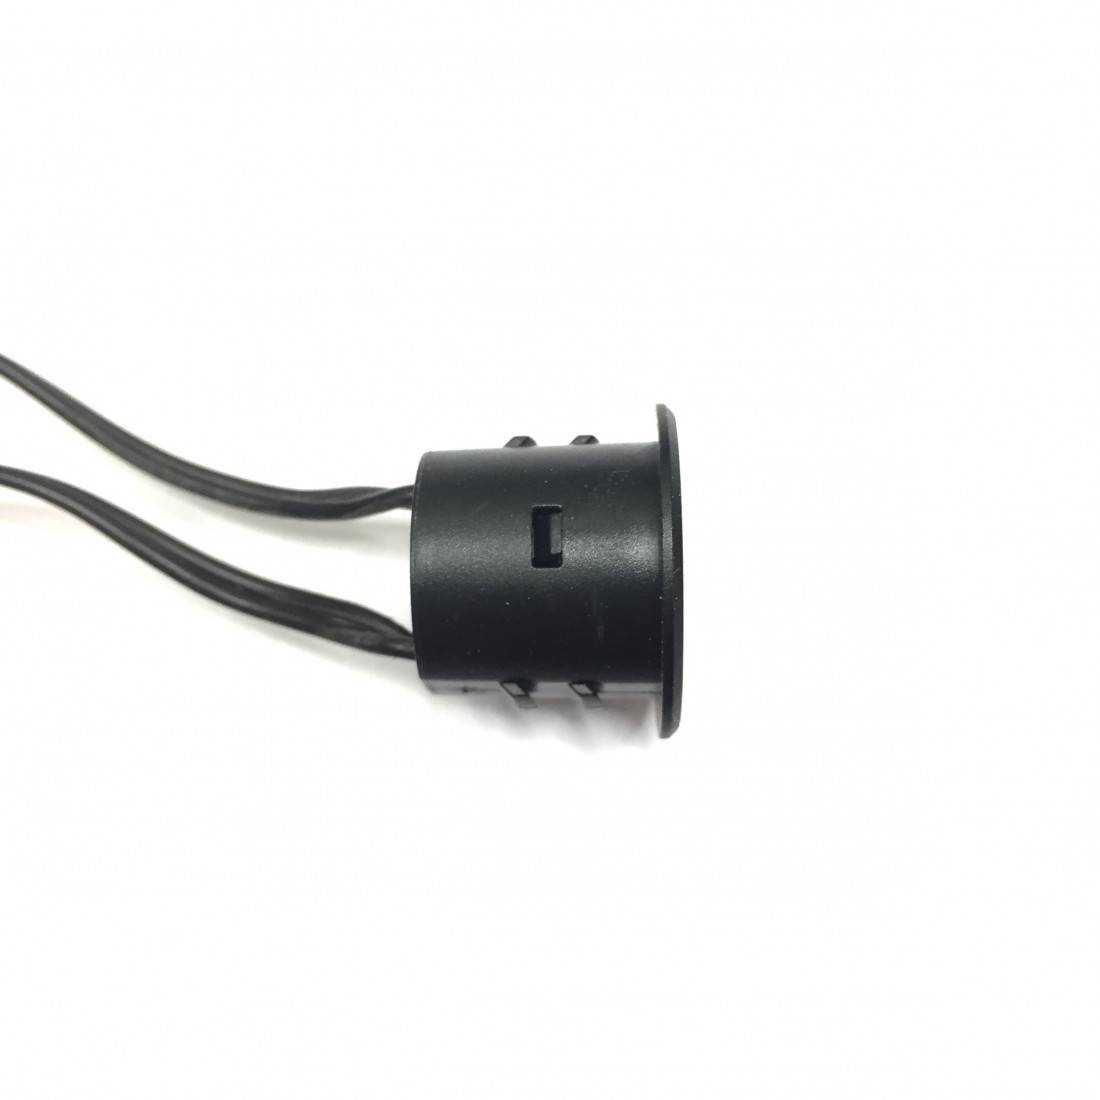 Interrupteur tactile avec variateur pour rubans LED unicolores 12-24V 2A